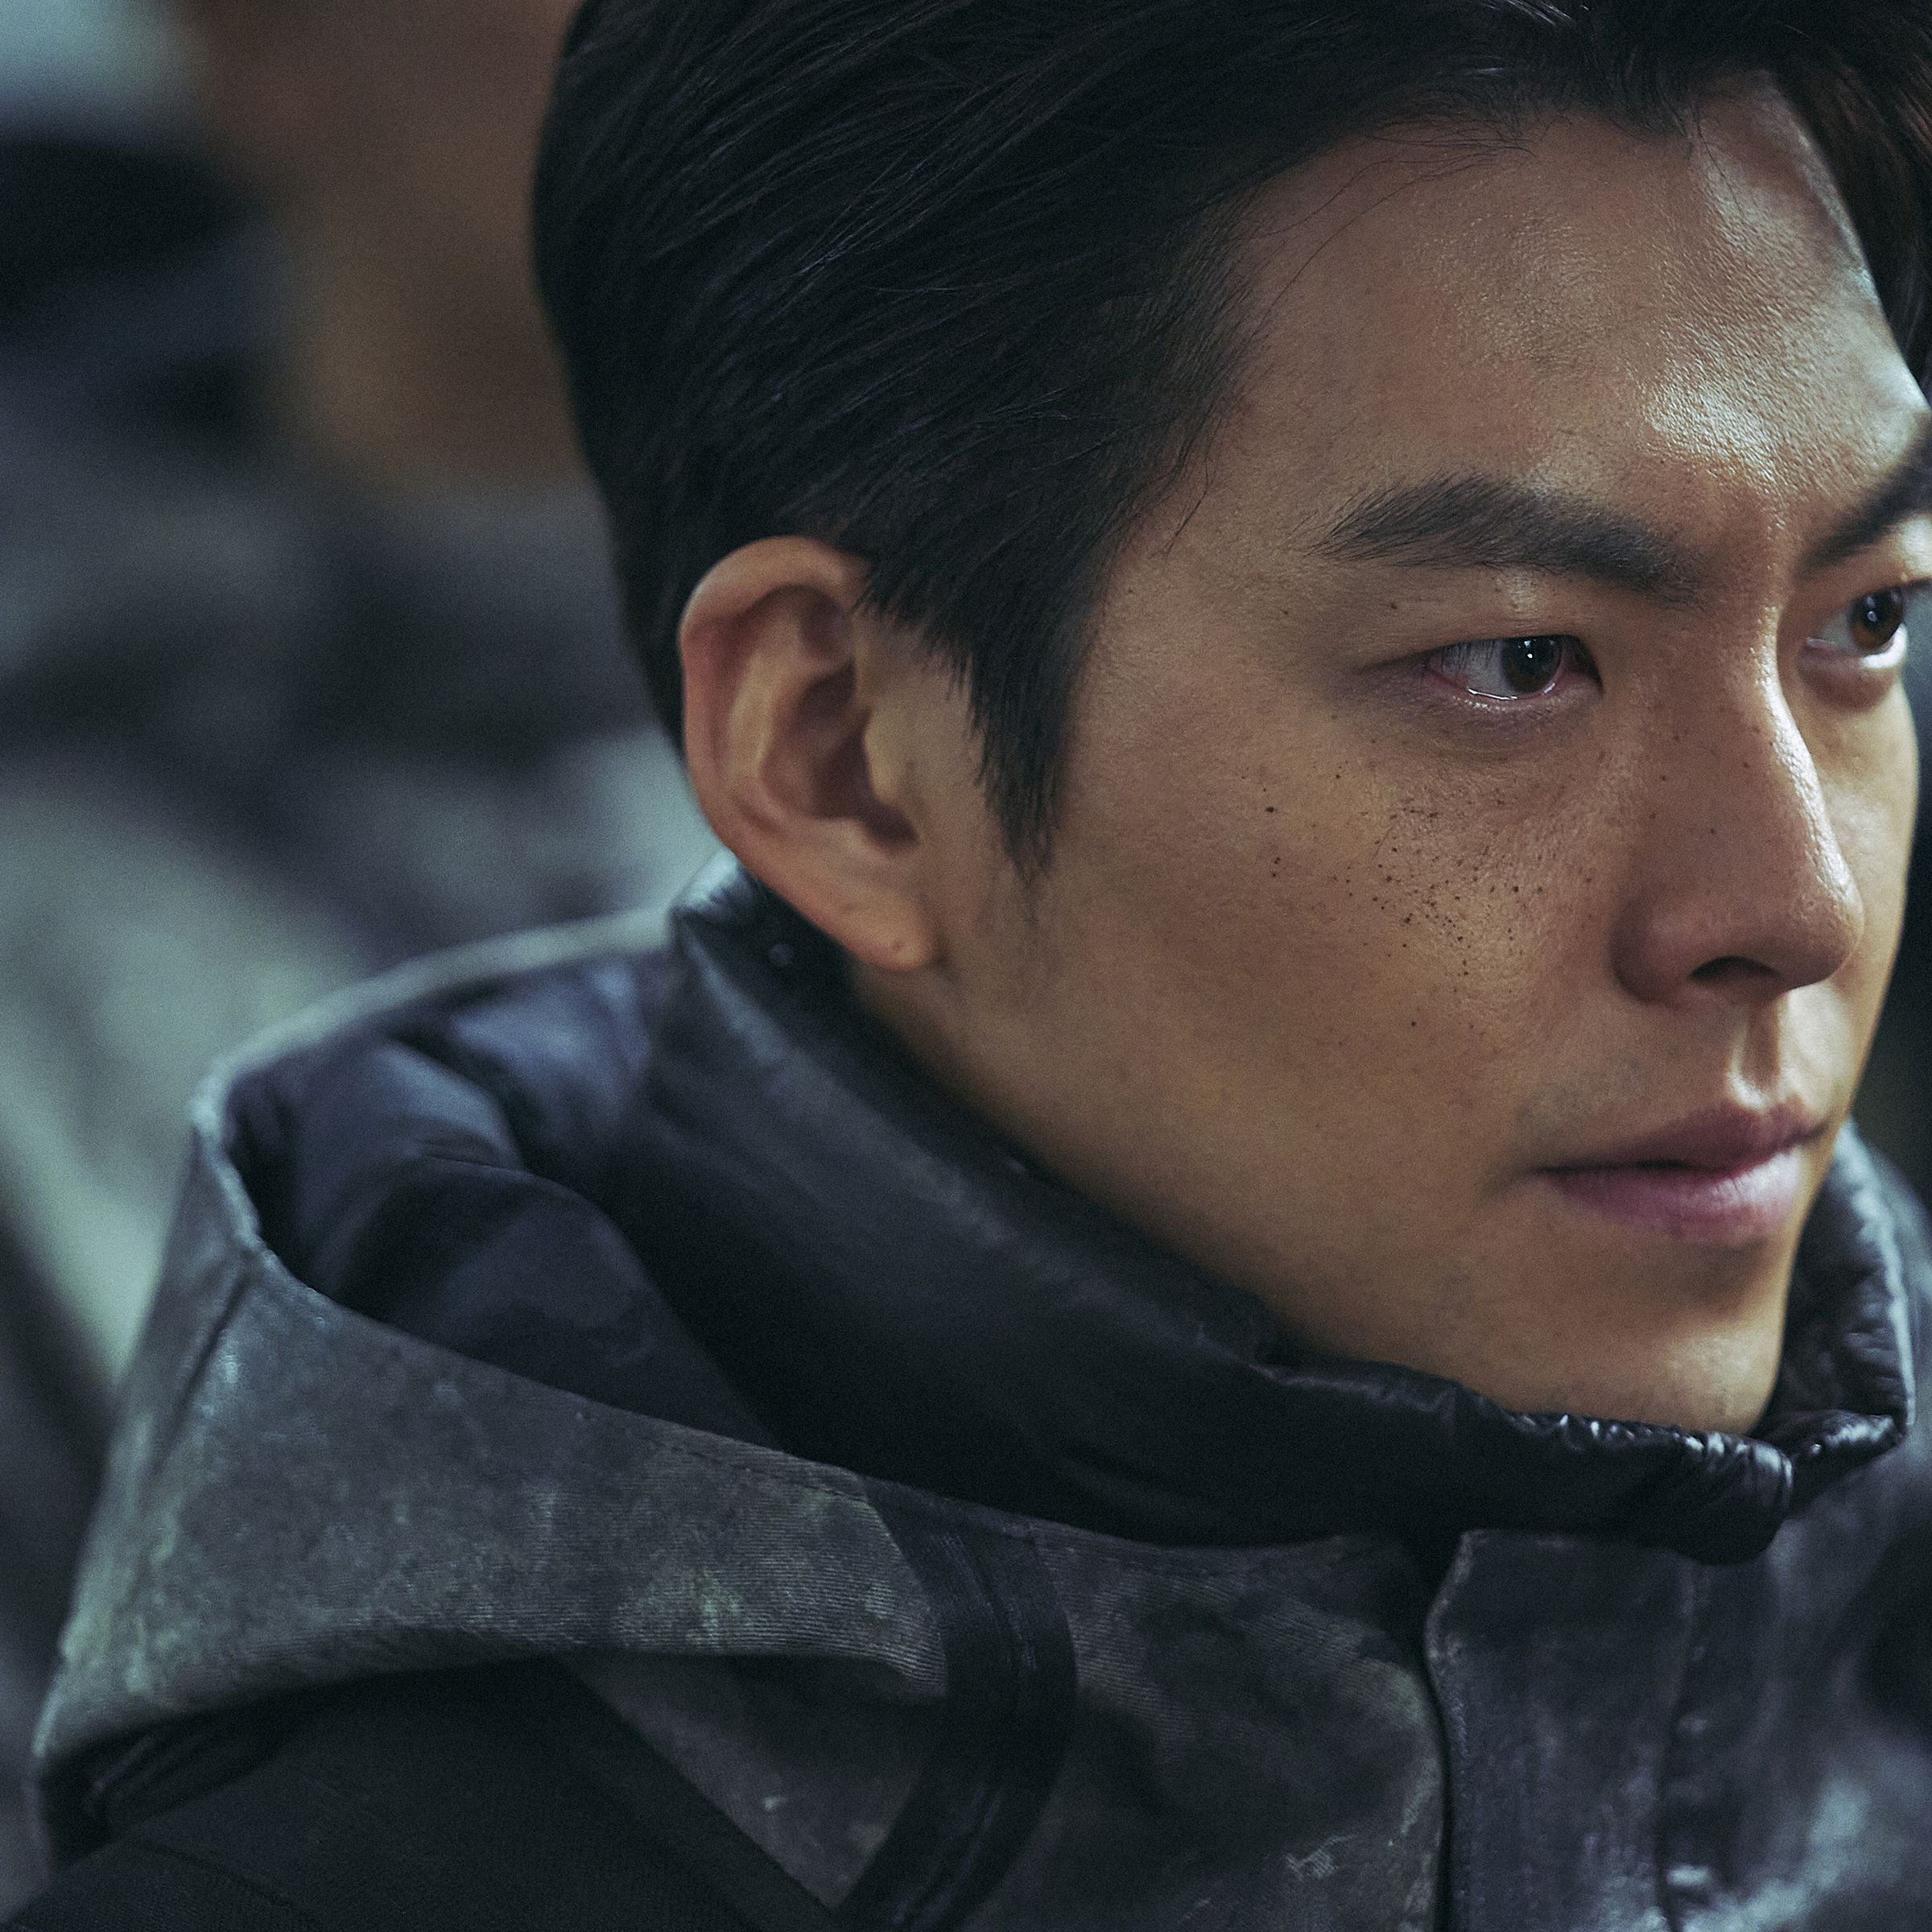 A still photo of Kim Woo-bin in Black Knight.